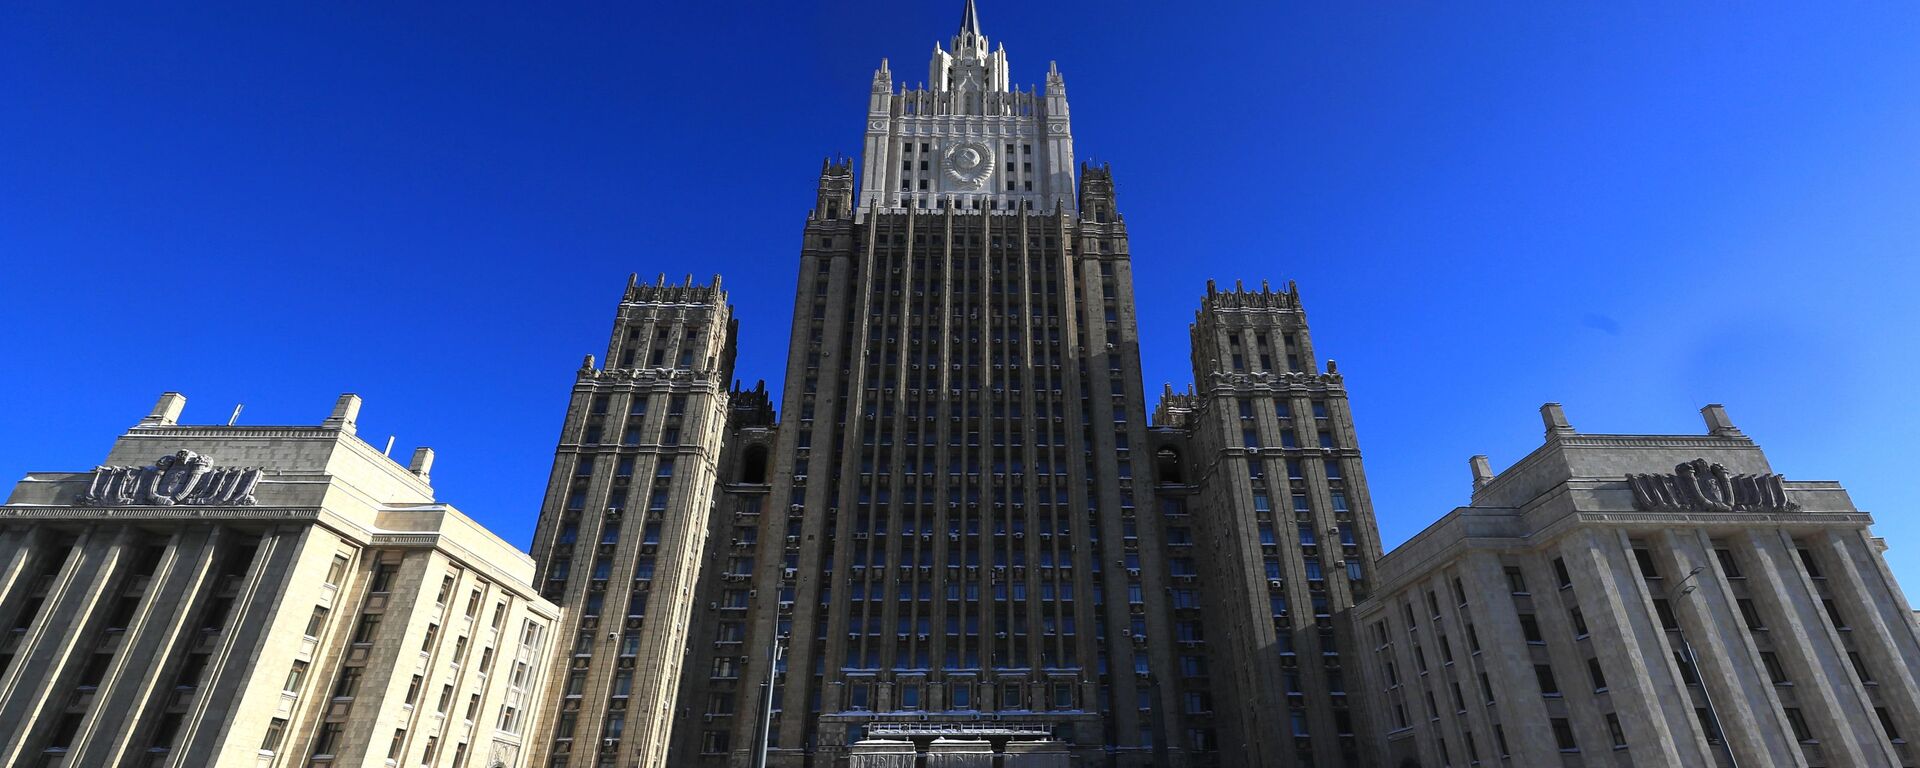 Здание Министерства иностранных дел РФ в Москве, архивное фото - Sputnik Латвия, 1920, 17.12.2021